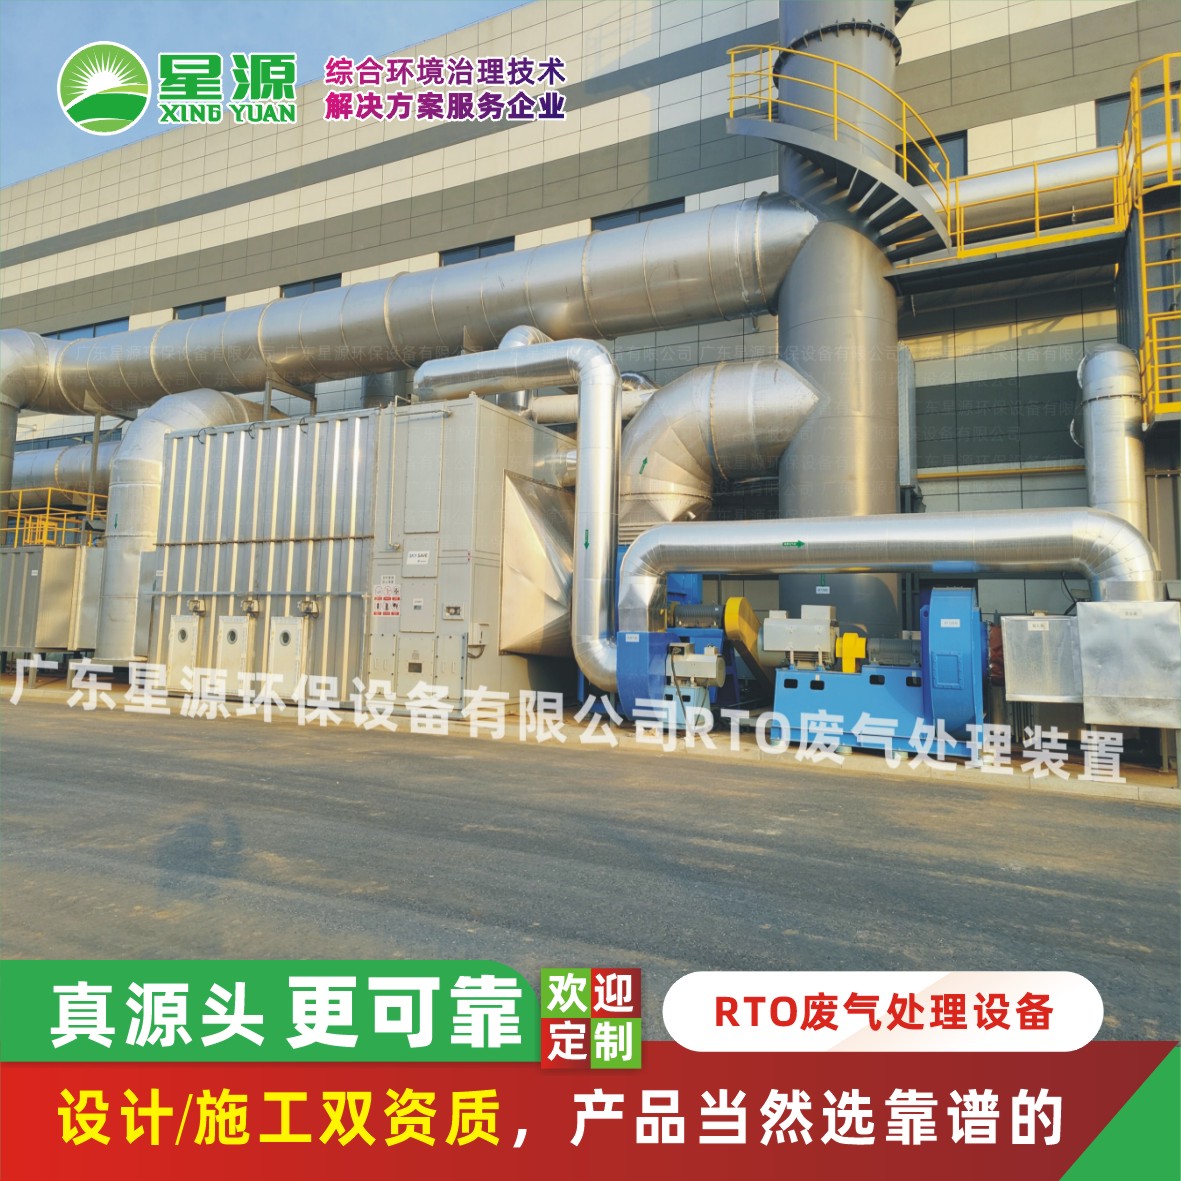 RTO廢氣處理設備-工業廢氣治理方案-廢氣處理廠家